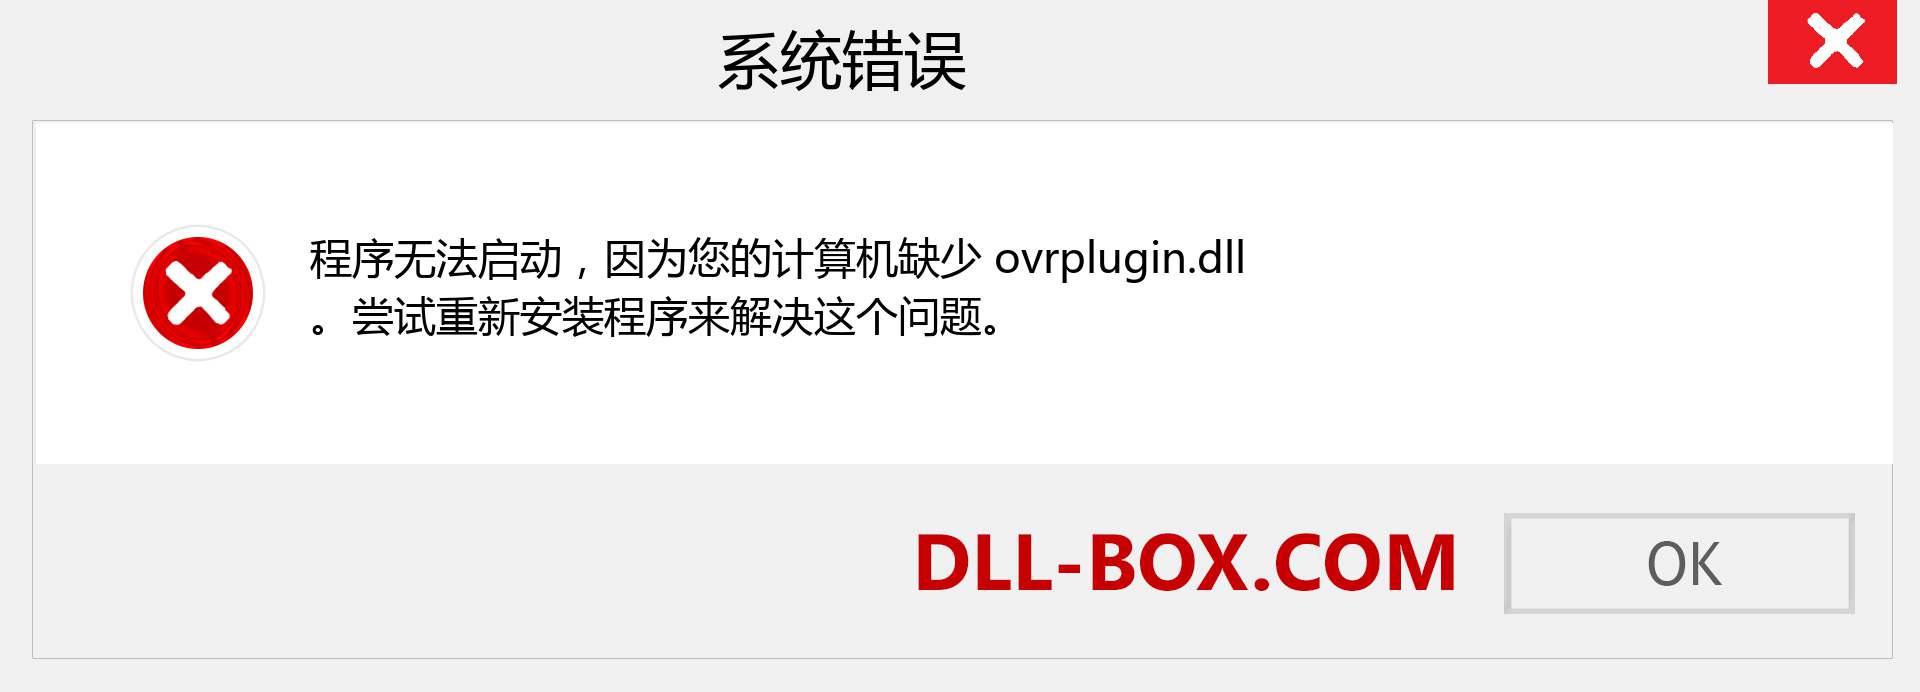 ovrplugin.dll 文件丢失？。 适用于 Windows 7、8、10 的下载 - 修复 Windows、照片、图像上的 ovrplugin dll 丢失错误